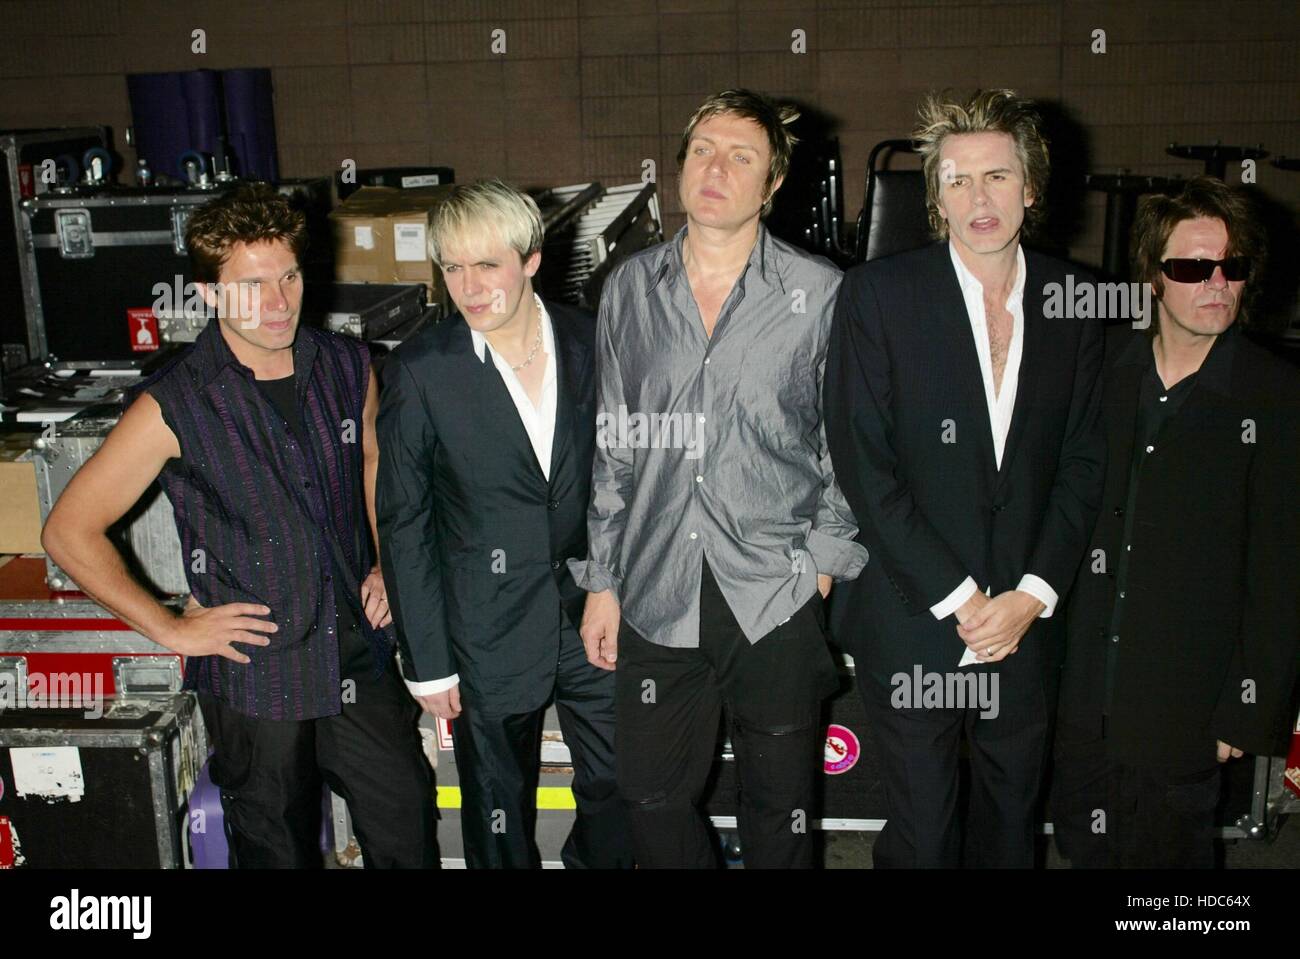 Die Rock Band, Duran Duran, mit Andy Taylor, Nick Rhodes, Simon le Bon, John Taylor und Roger Taylor kommen Im Roxy in West Hollywood, Kalifornien am 15. Juli 2003. Foto von Francis specker Stockfoto